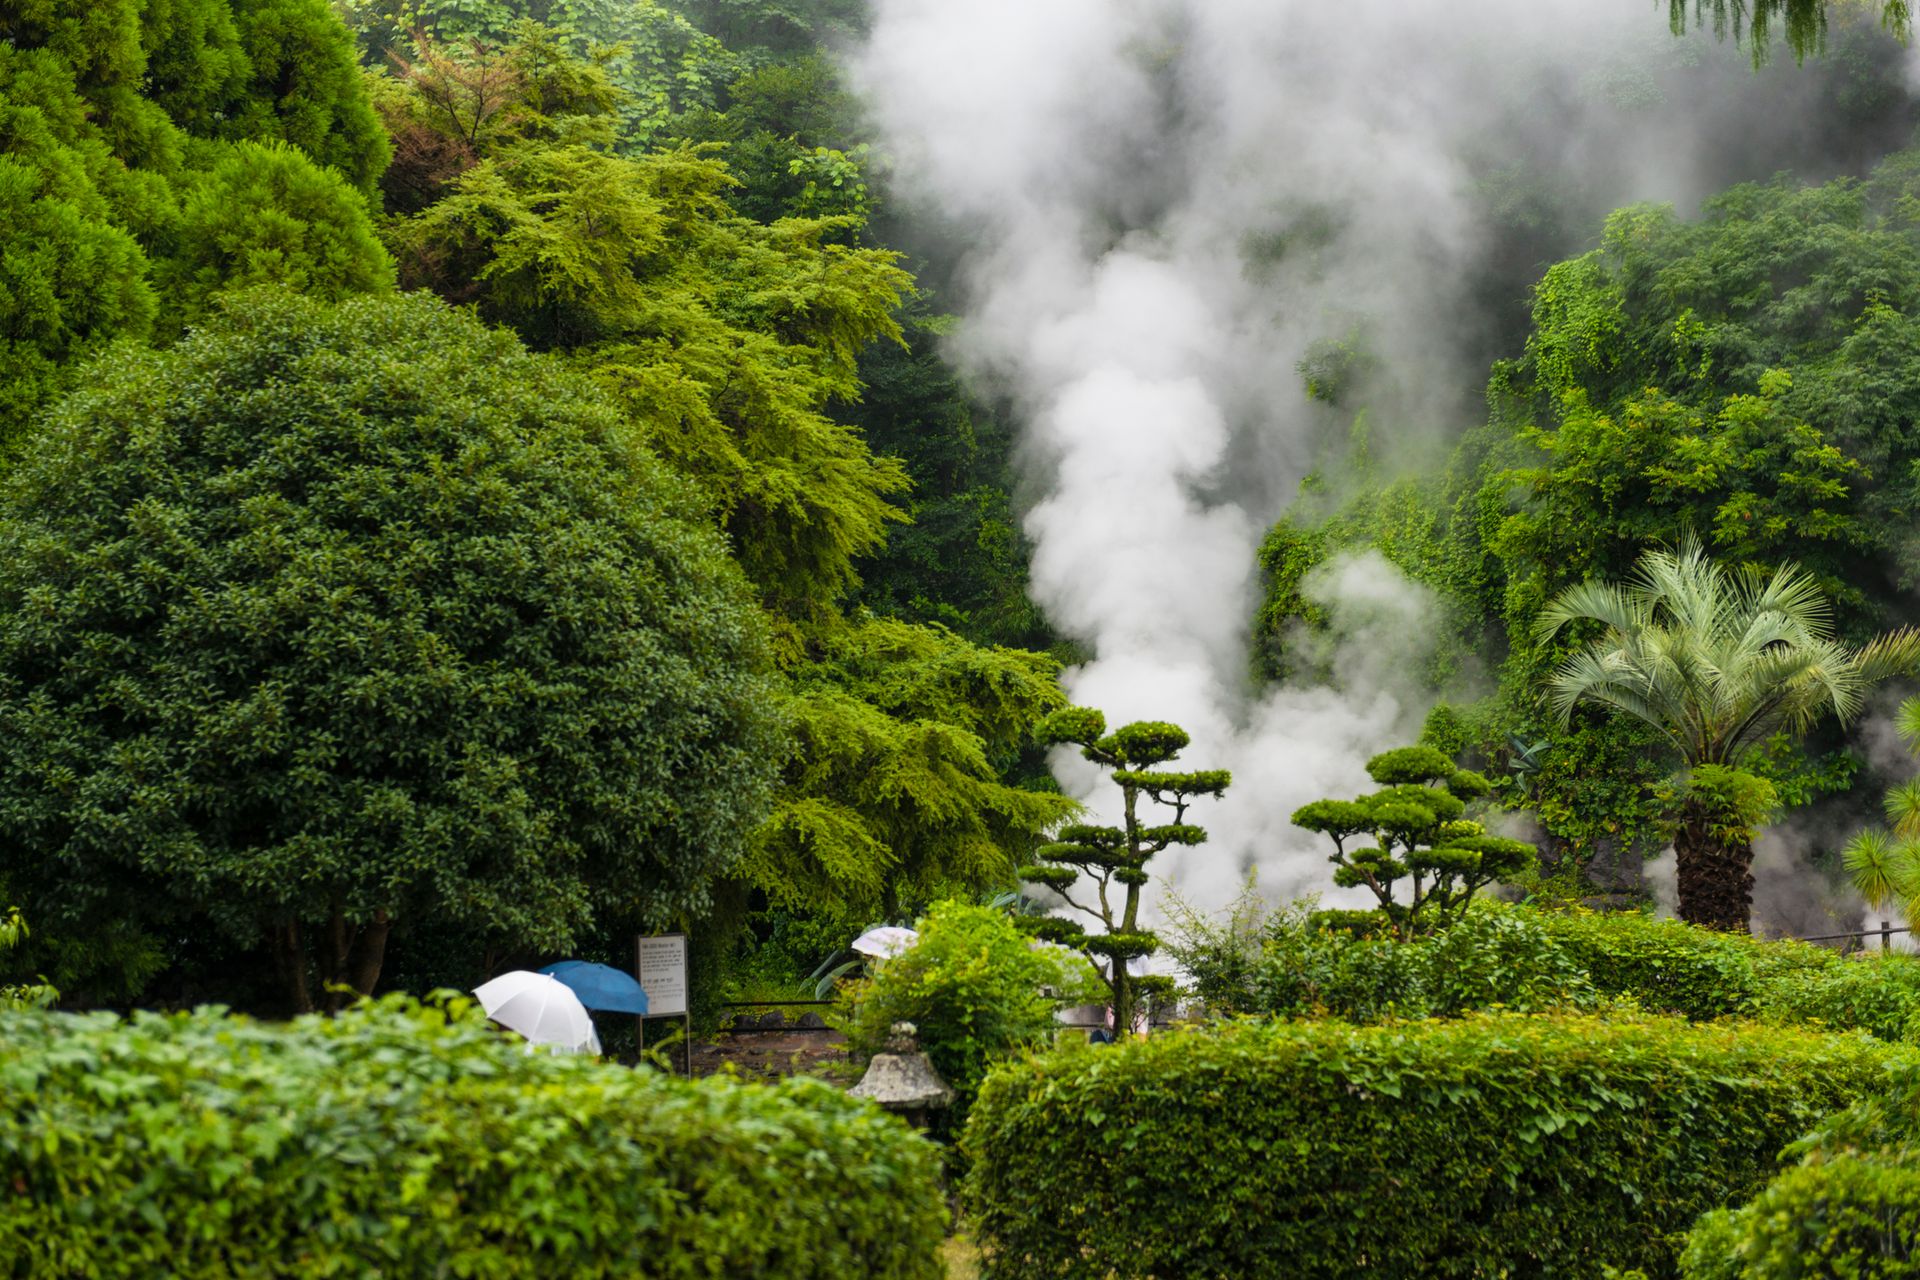 Les sources chaudes naturelles de Beppu - Japon ©iStock